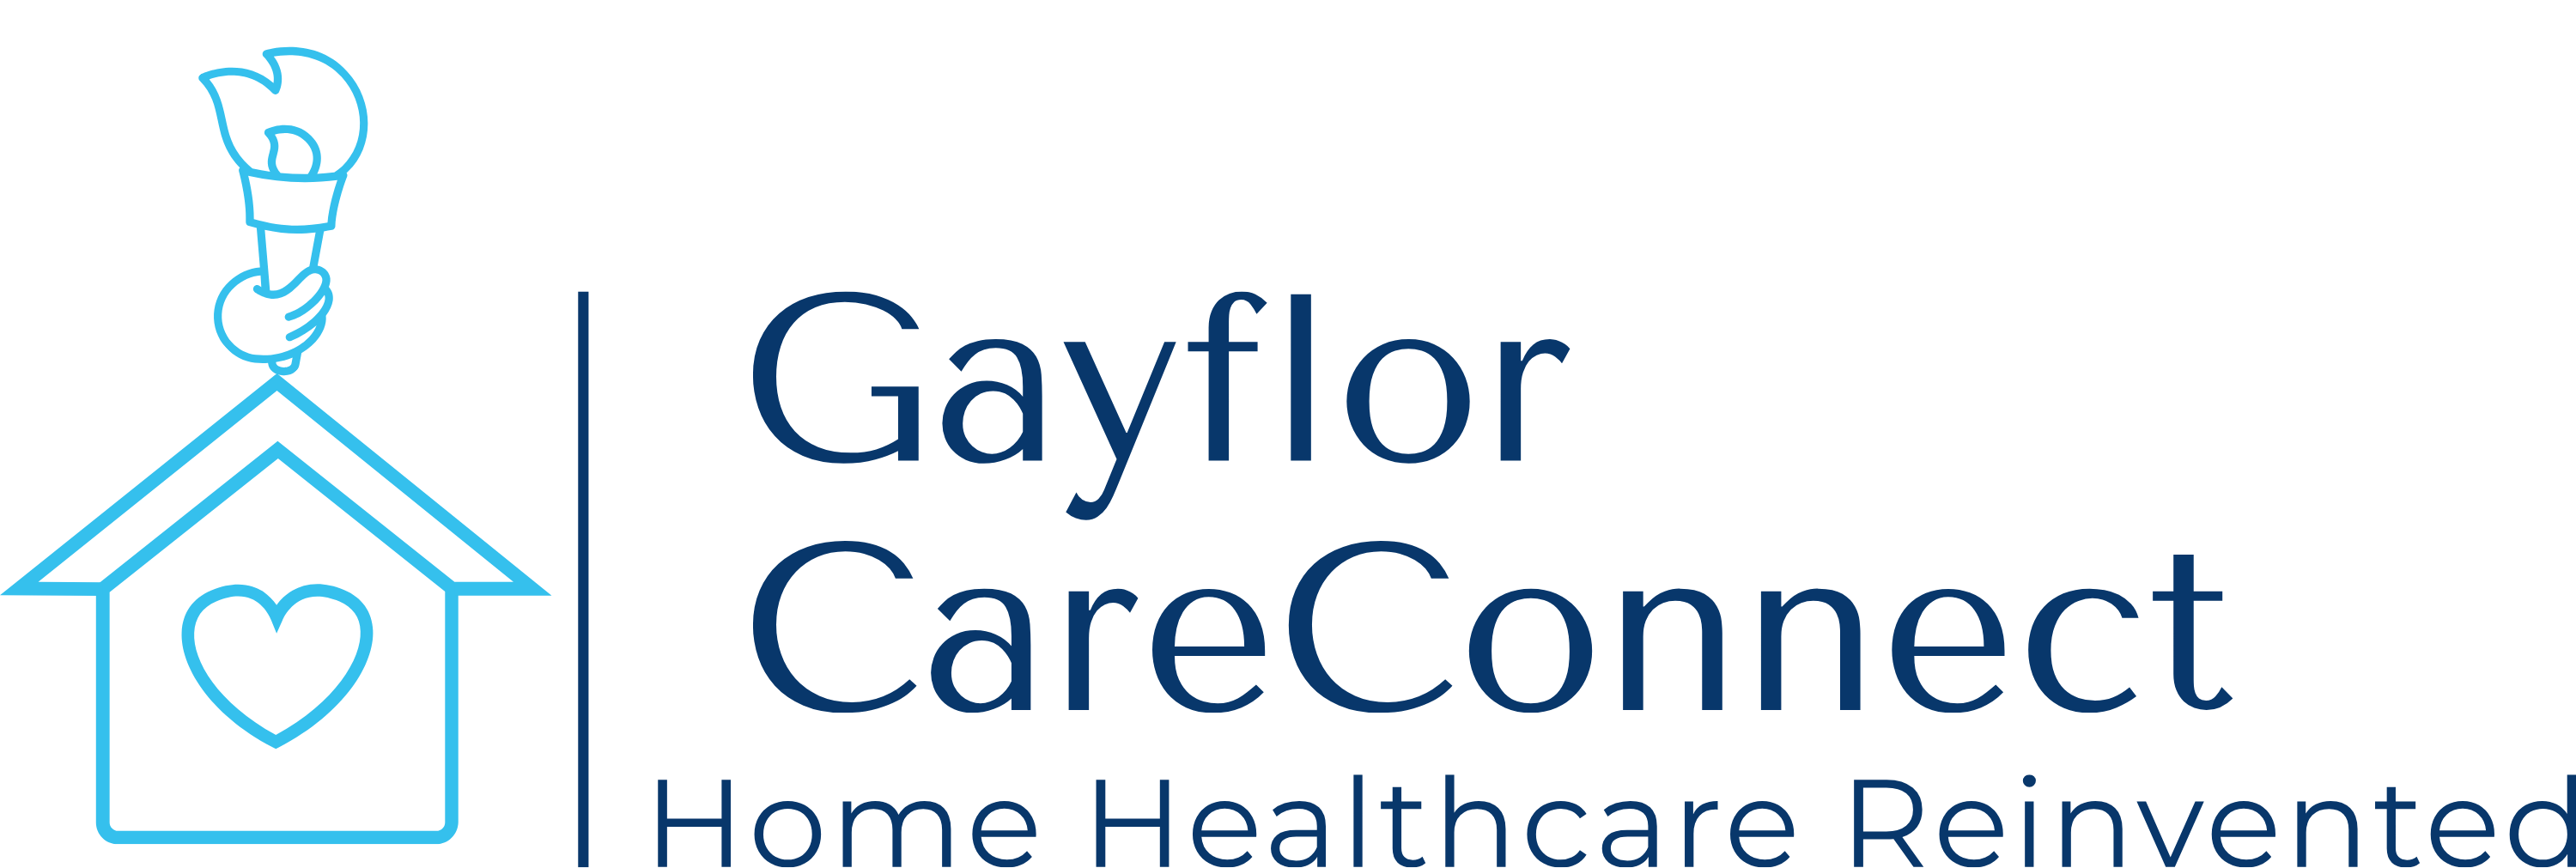 Gayflor CareConnect Team - Manassas, VA